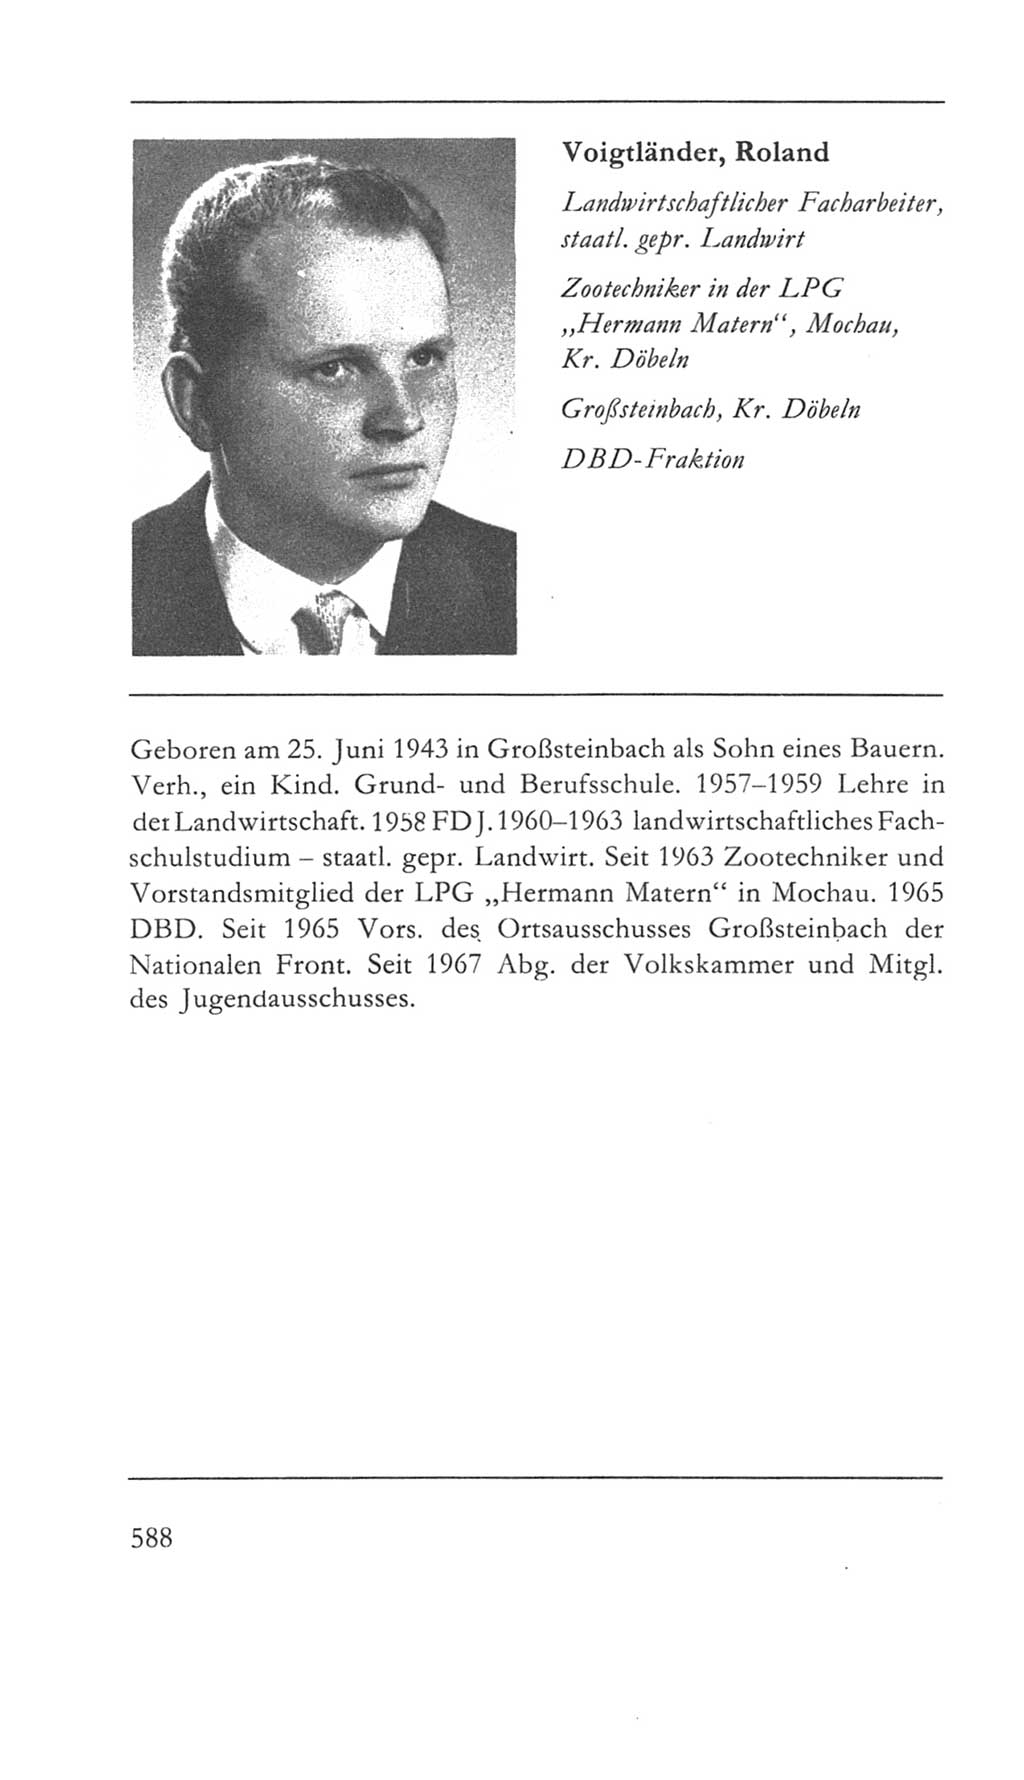 Volkskammer (VK) der Deutschen Demokratischen Republik (DDR) 5. Wahlperiode 1967-1971, Seite 588 (VK. DDR 5. WP. 1967-1971, S. 588)